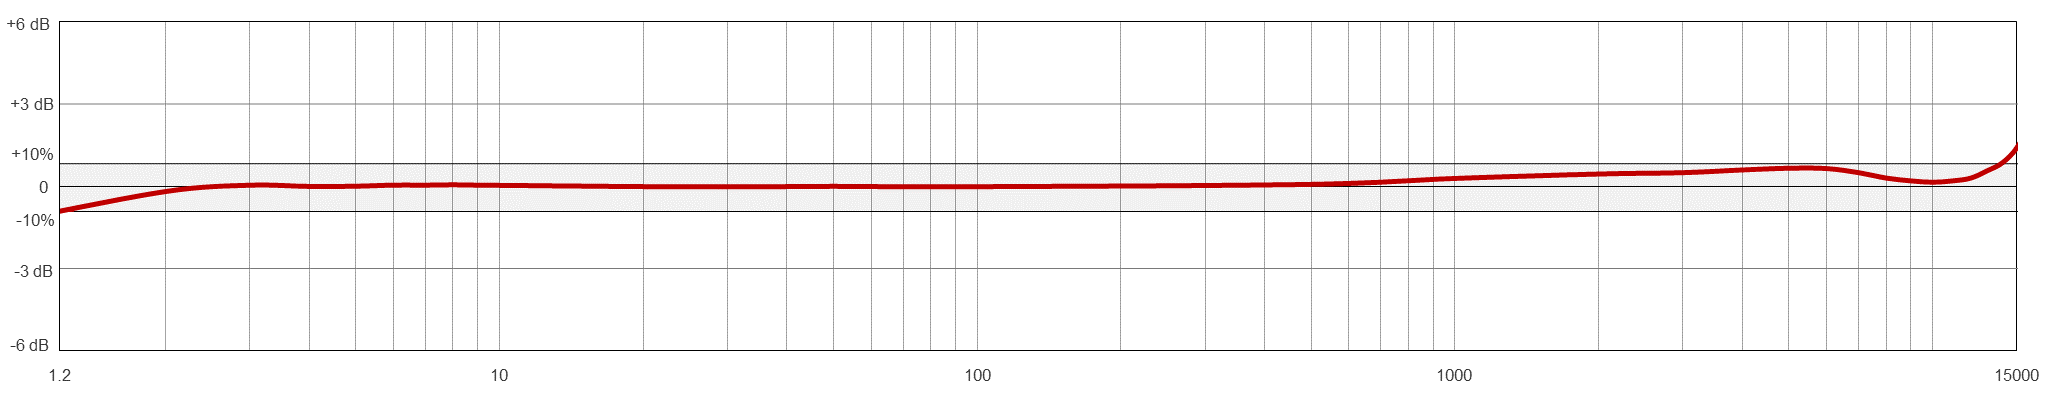 TA931 典型频率响应